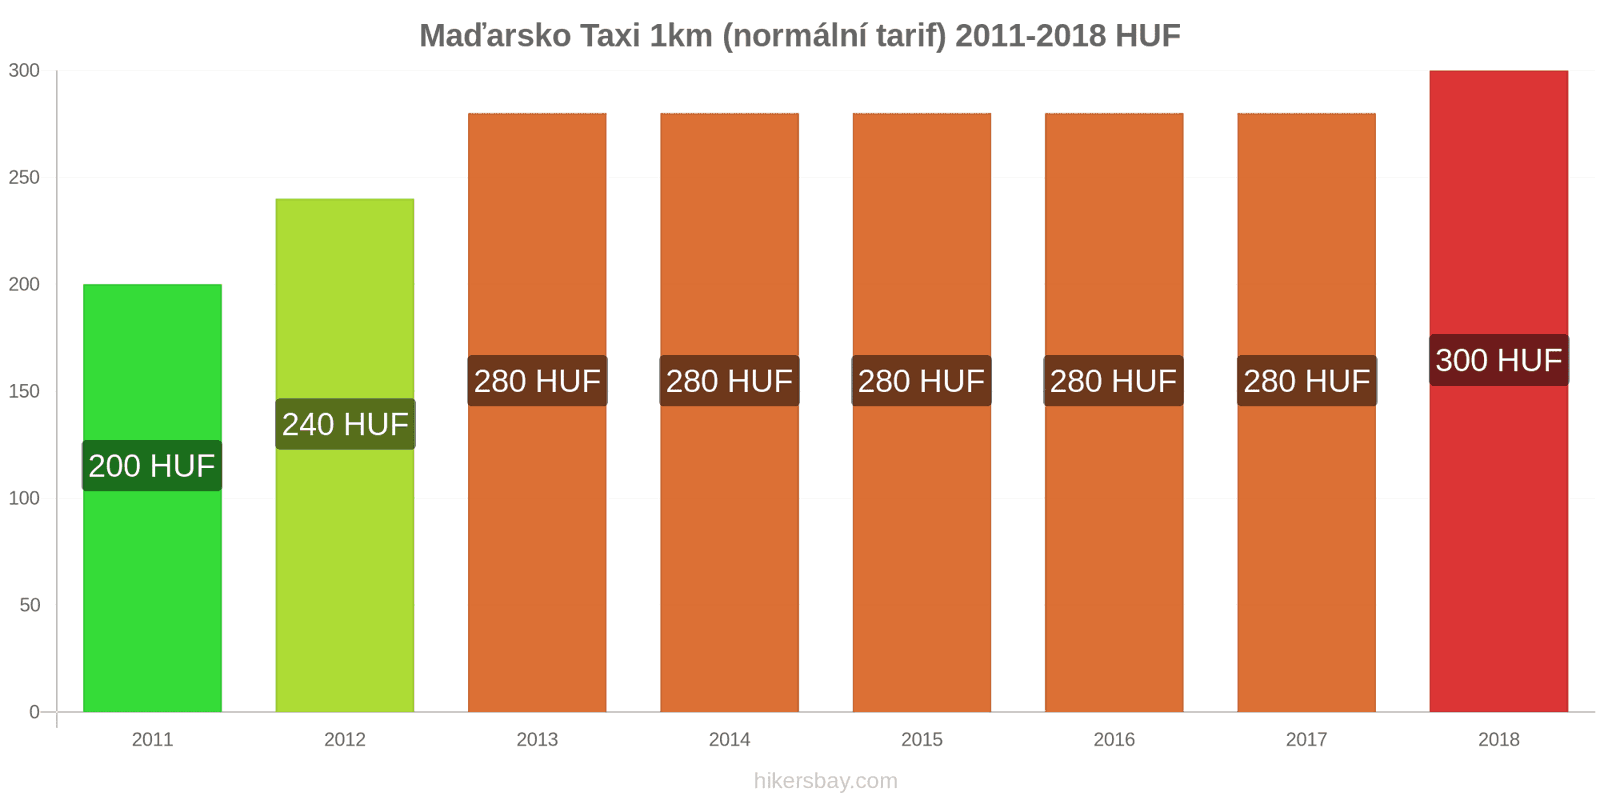 Maďarsko změny cen Taxi 1km (normální tarif) hikersbay.com